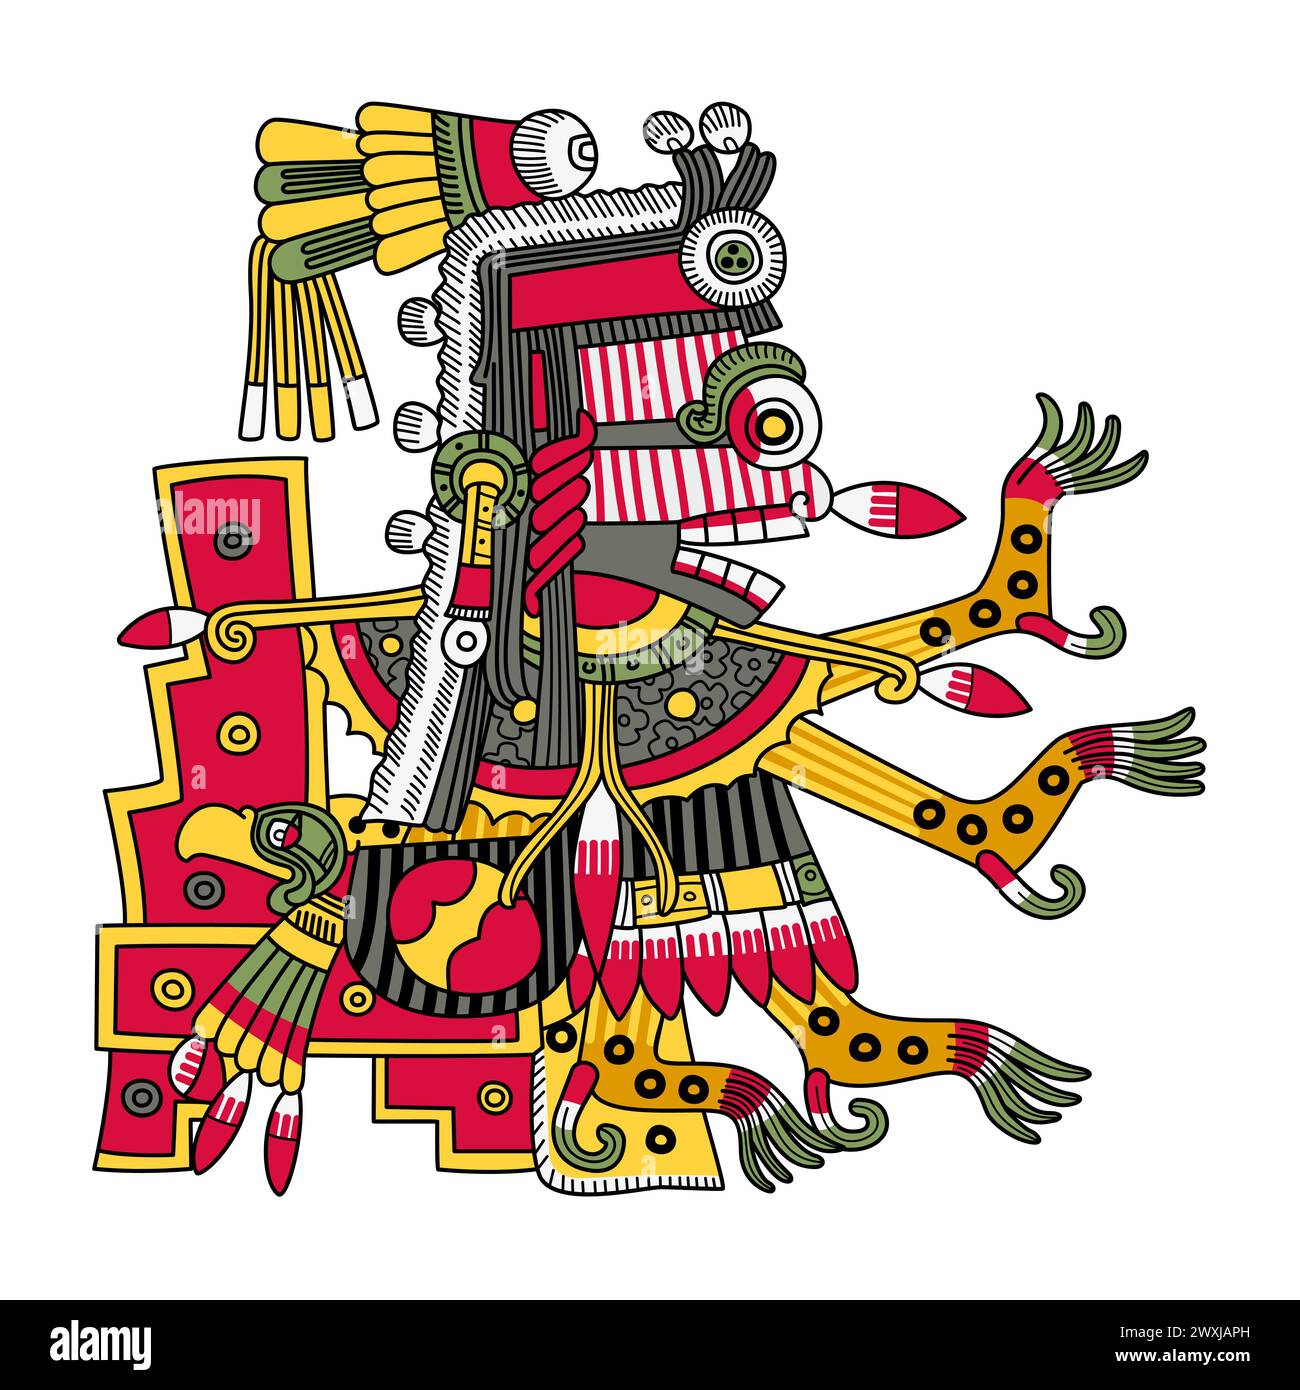 Itzpapalotl, aztekische Todesgöttin, markanter Skelettkämpfer, Königin des Zitzimimeh, die Sterndämonen, die Menschen während Sonnenfinsternissen verzehren können. Stockfoto